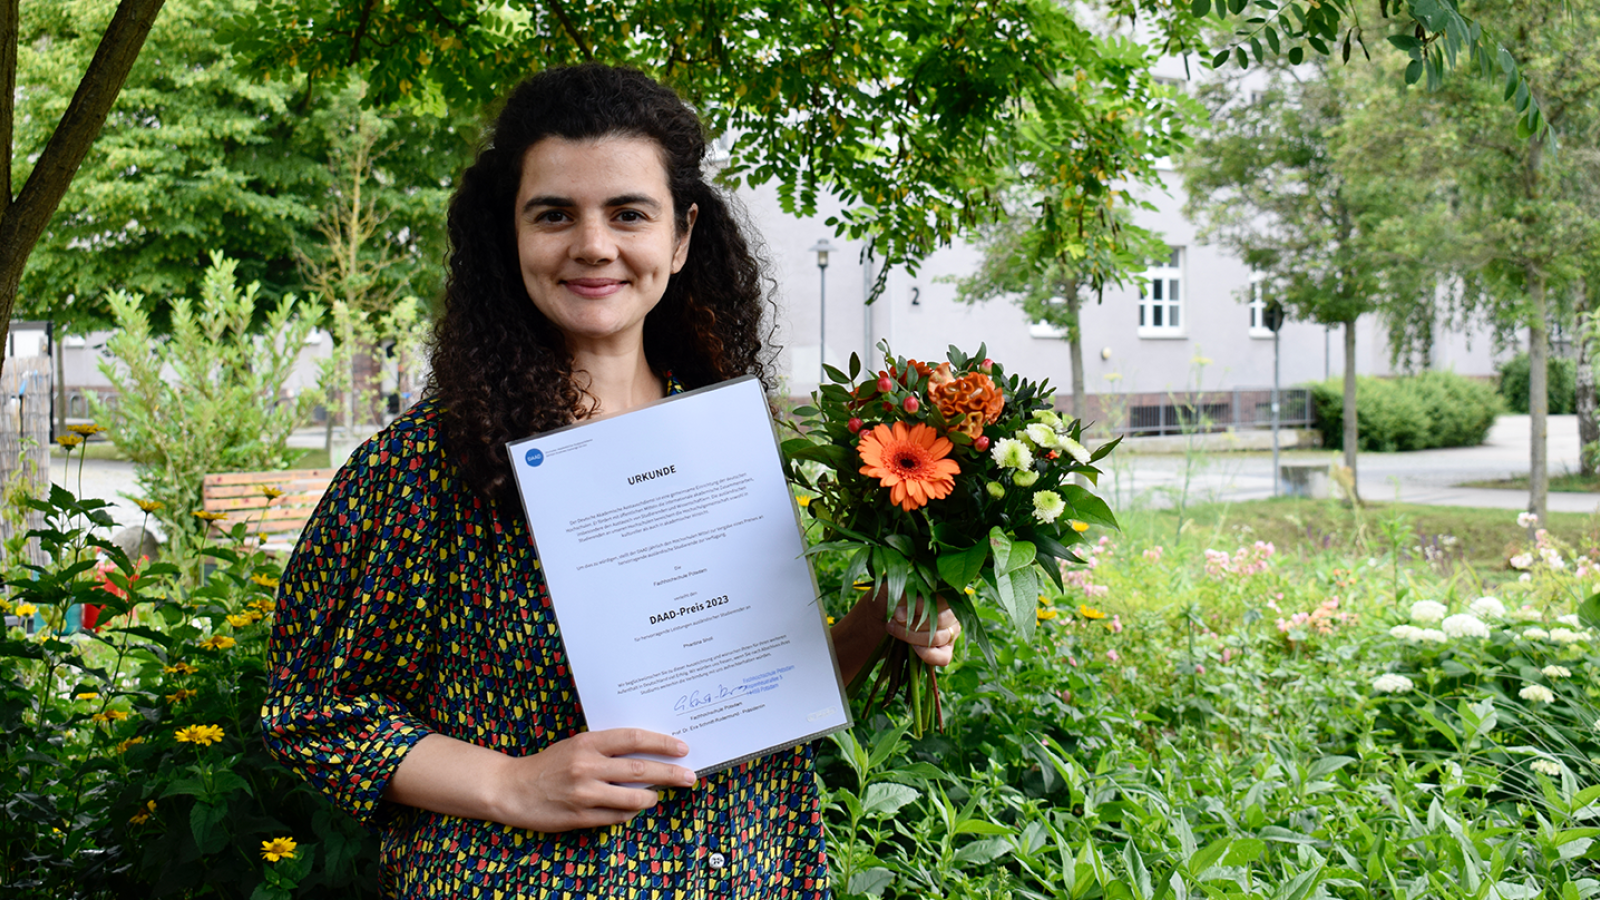 Die Preisträgerin des DAAD Presies, Phantina Sholi hält ihre Urkunde und ein Strauß Blumen hoch. Sie steht in einem grün bewachsenen Garten.